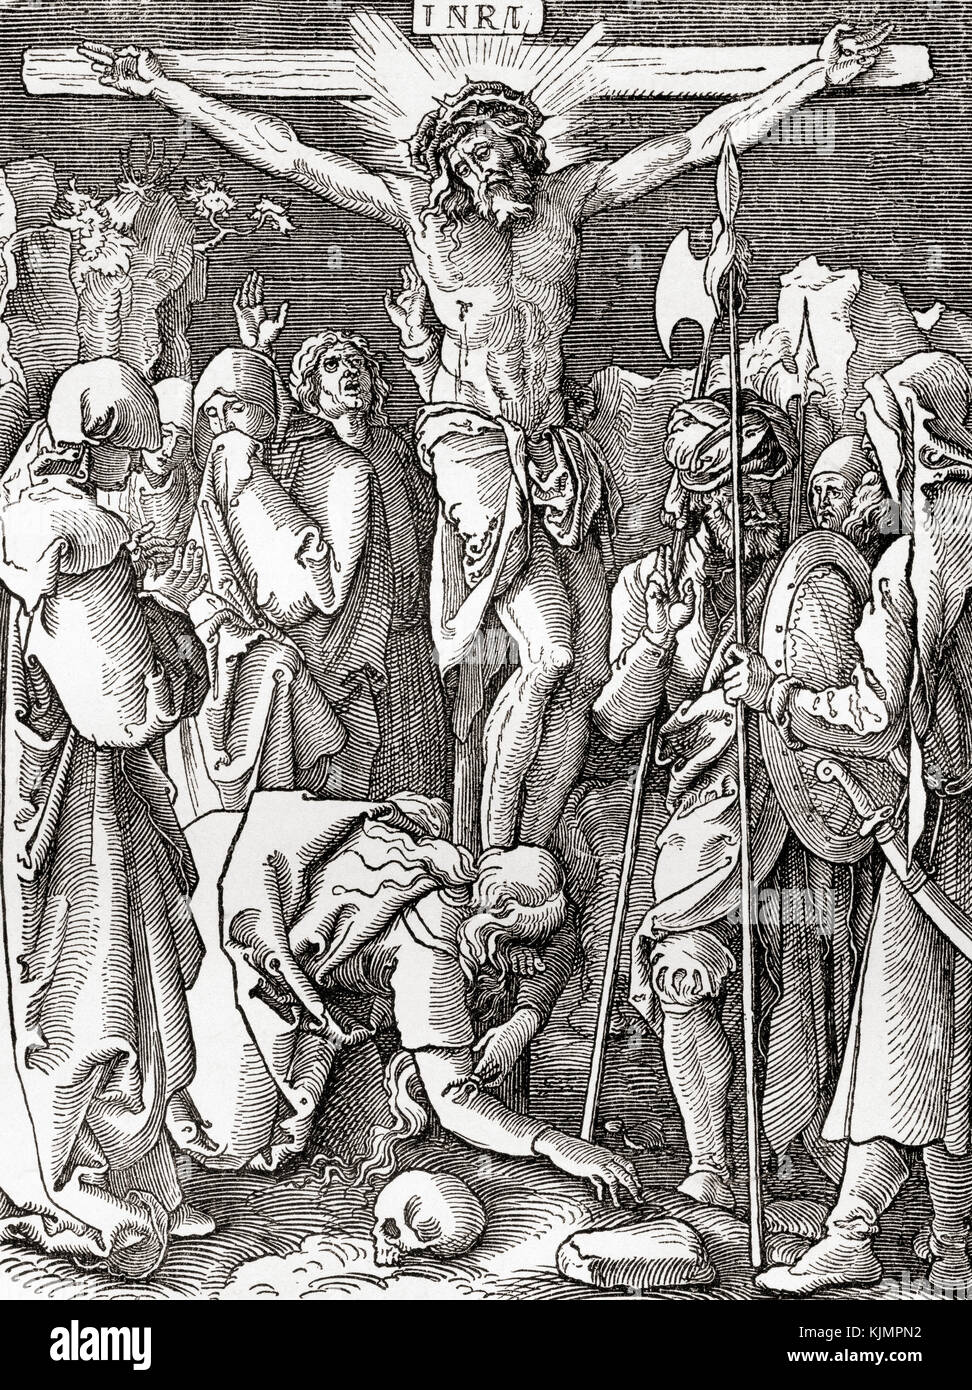 Die Kreuzigung nach einem Druck von Albrecht Dürer. Aus ward and Lock's Illustrated History of the World, erschienen um 1882. Stockfoto